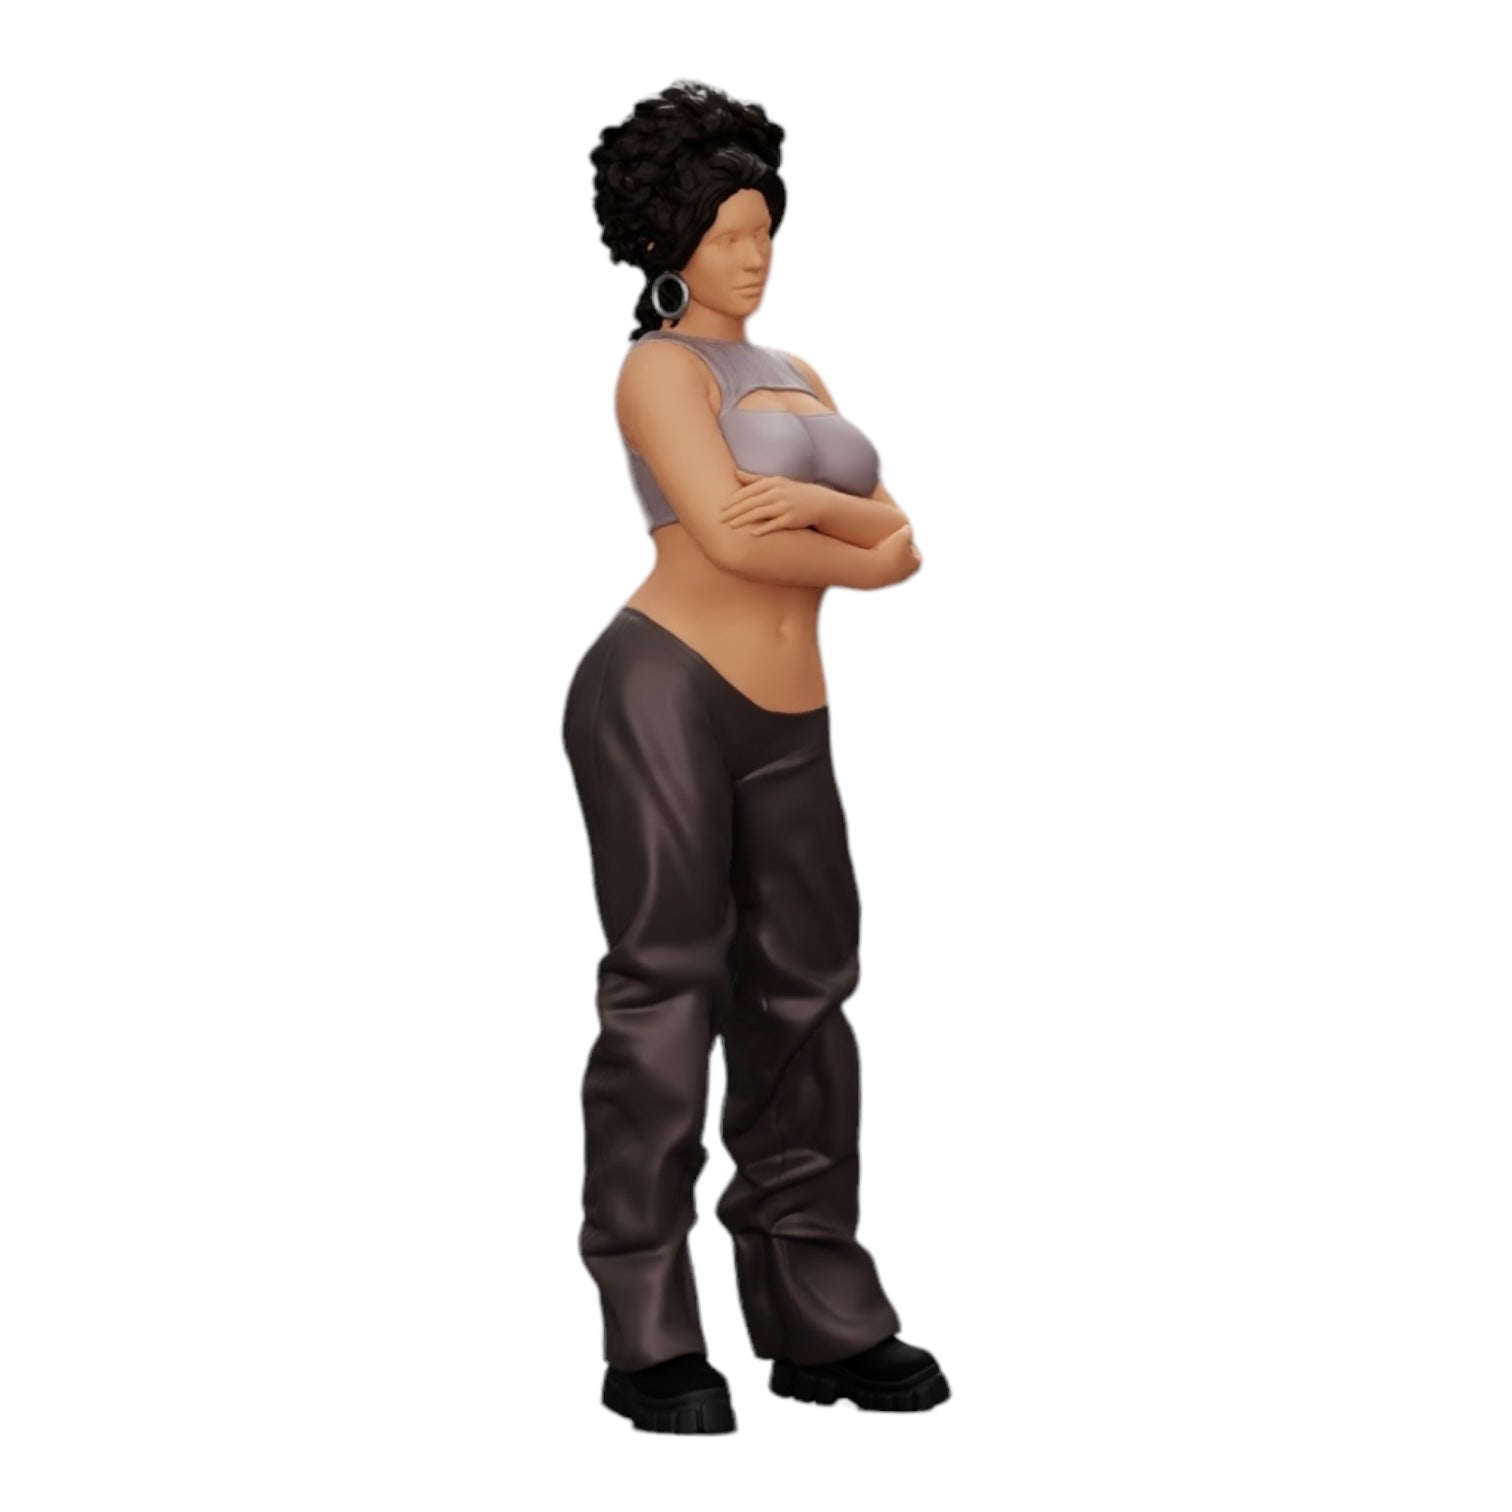 Diorama Modellbau Produktfoto 0: Mädchen mit lockigem Haar in weiten Hosen mit verschränkten Händen (Ref Nr. A39)